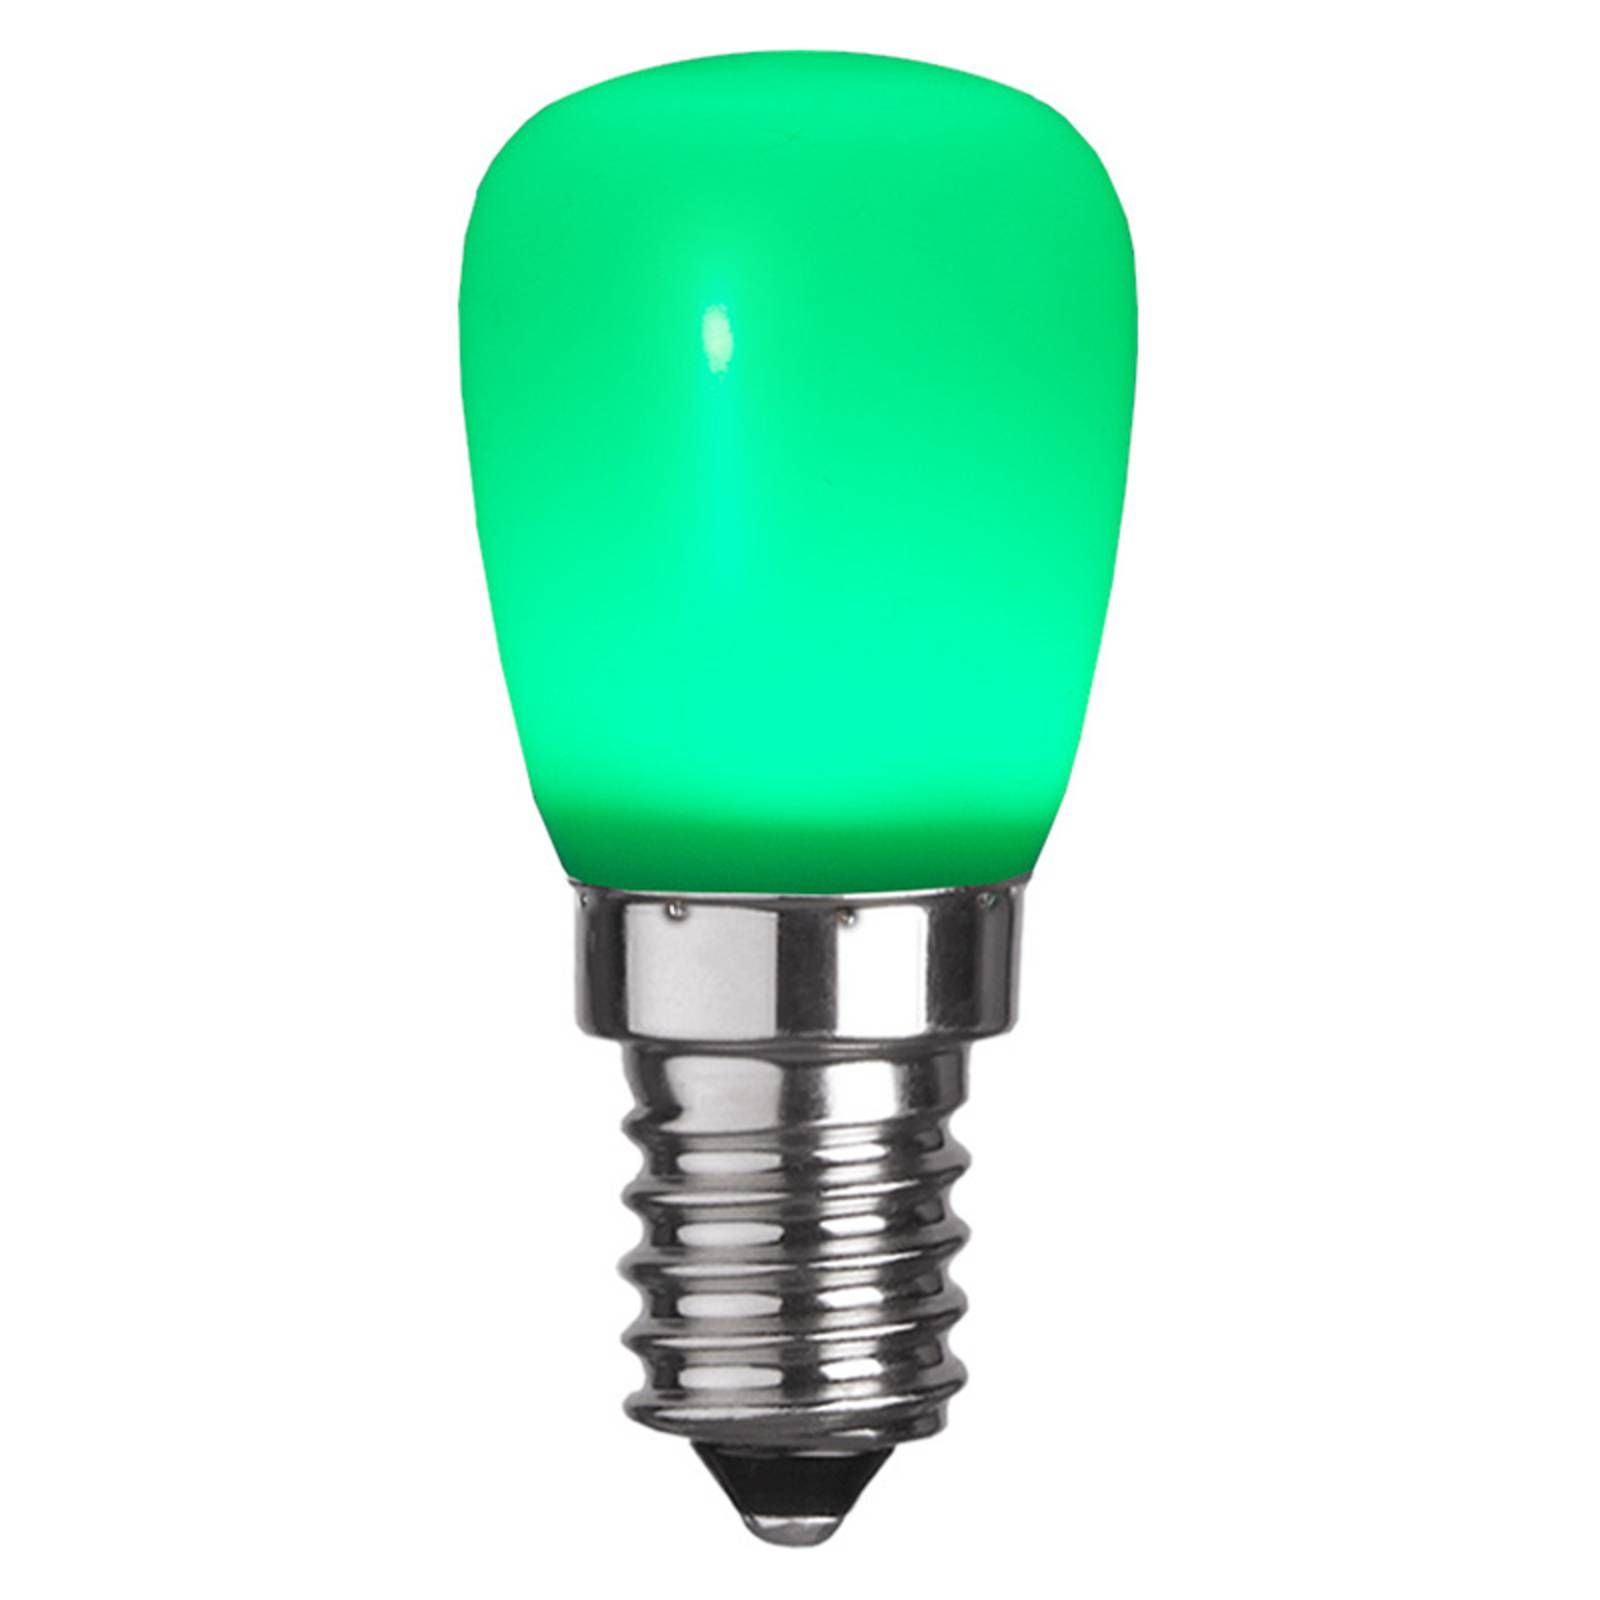 STAR TRADING LED žiarovka E14 ST26 z plastu, zelená, polykarbonát, E14, 0.9W, P: 5.8 cm